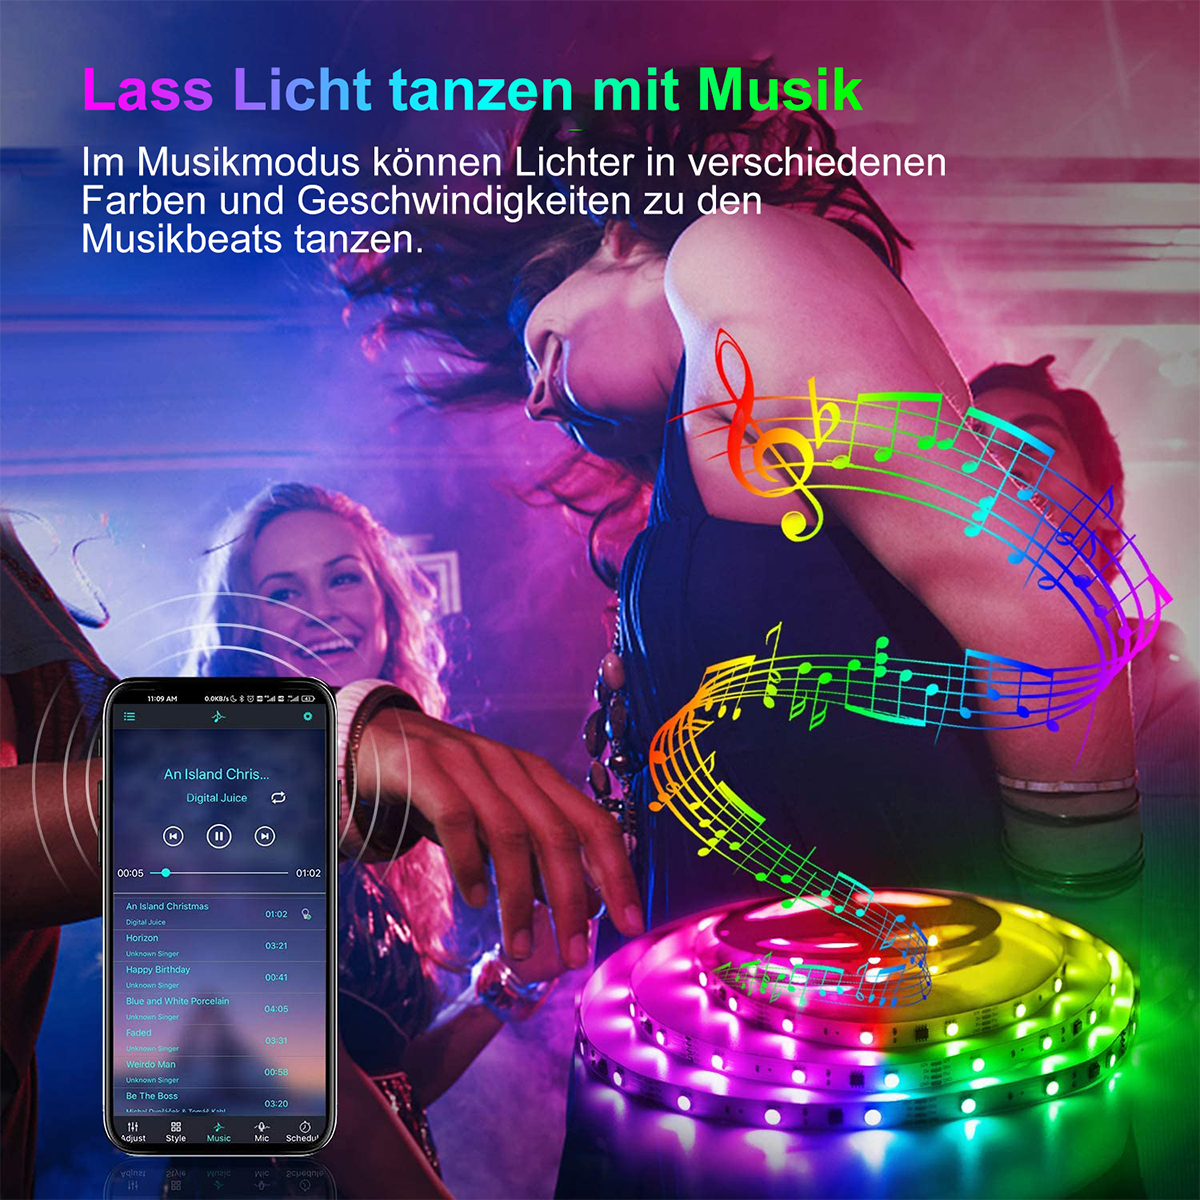 DEDOM Bluetooth 30M APP Leuchtstreifen LED-Licht, Fernsteuerung Lichtleiste,Bareboard Mit RGB, RGB LED Steuerung